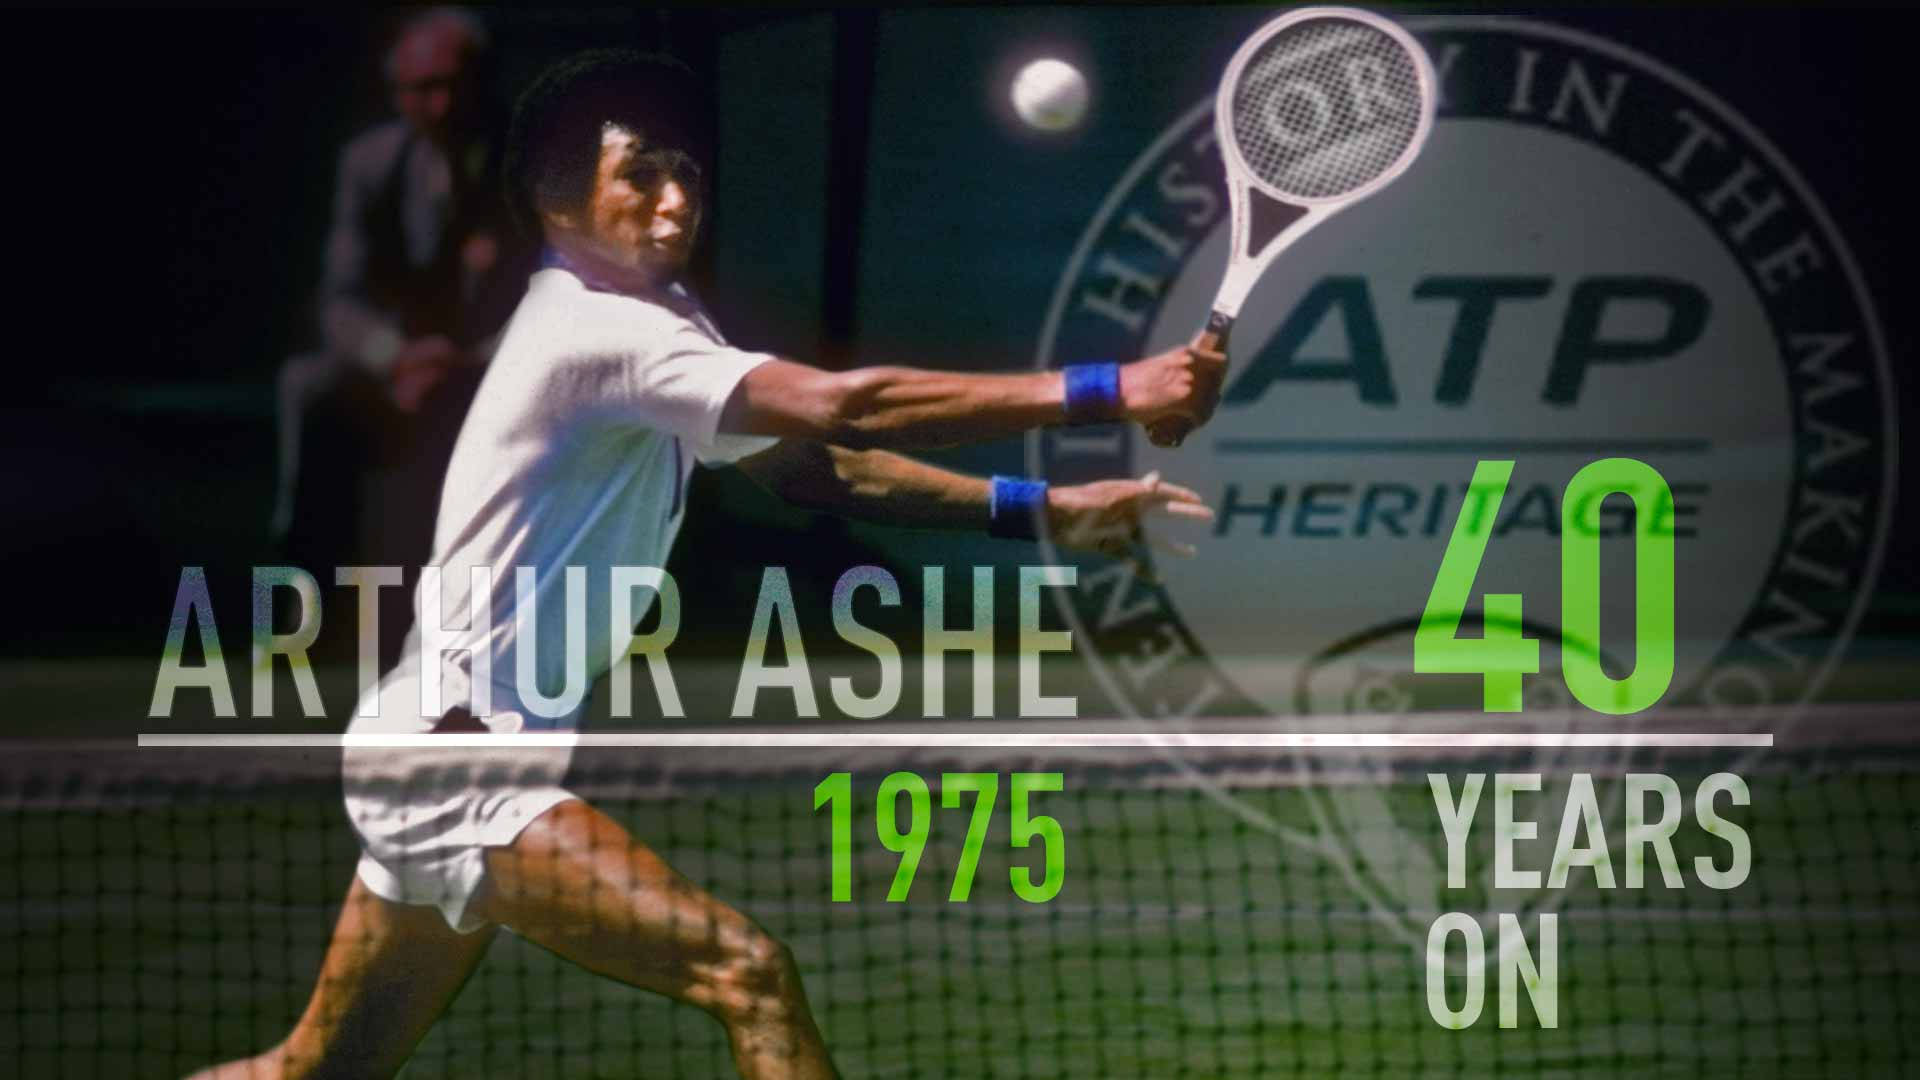 Tennisspieler-logo: Arthur Ashe Wallpaper